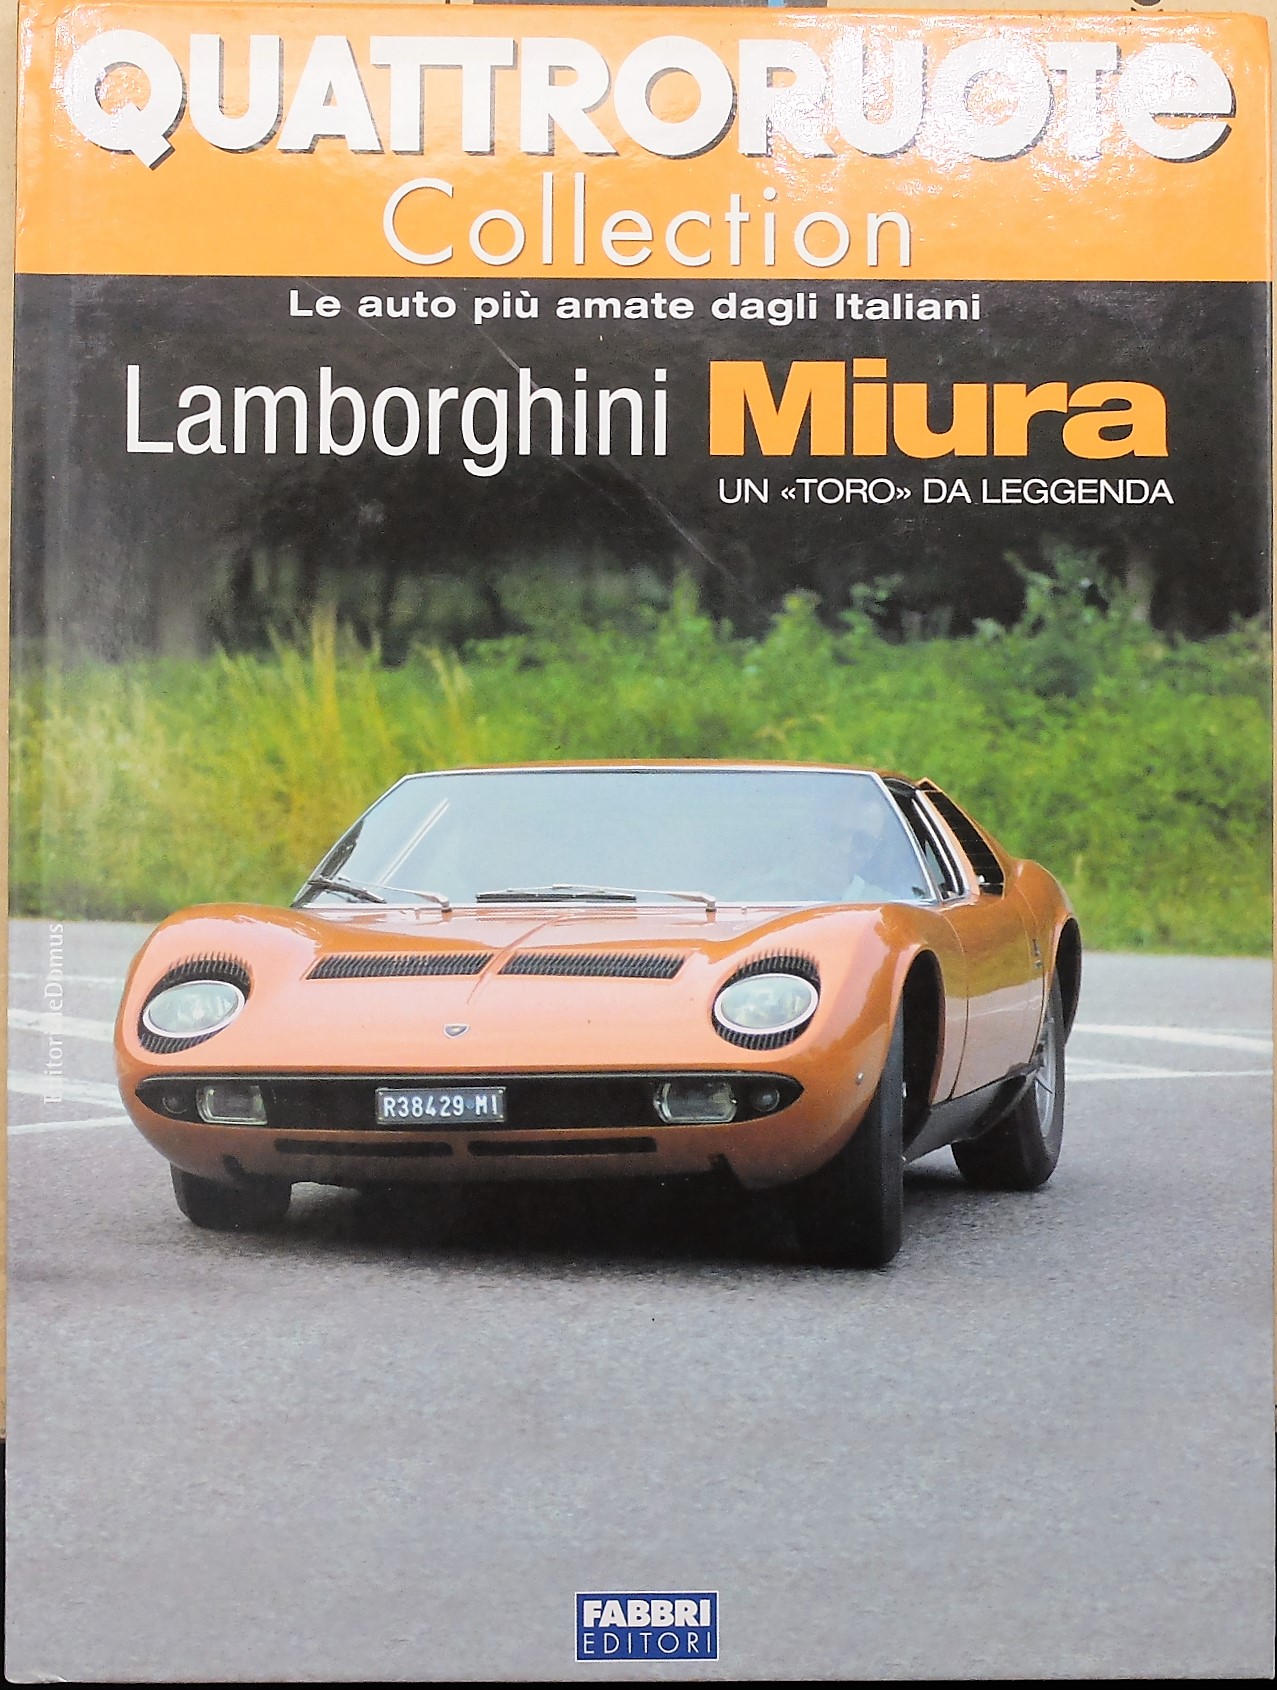 fascicolo Quattroruote Collection LAMBORGHINI MIURA modellino auto libro book